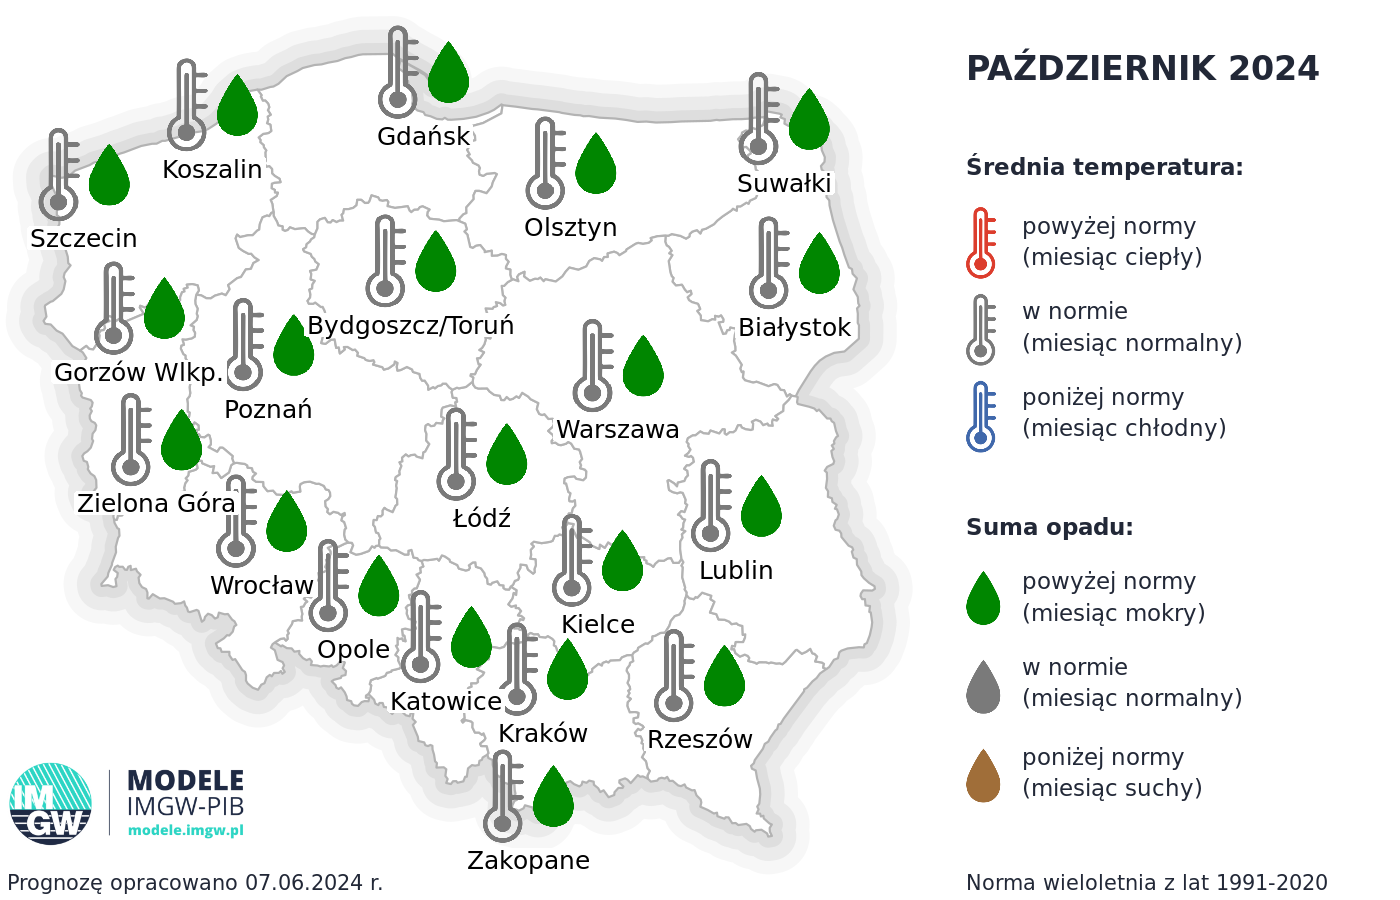 Rys. 4. Prognoza średniej miesięcznej temperatury powietrza i miesięcznej sumy opadów atmosferycznych na październik 2024 r. dla wybranych miast w Polsce